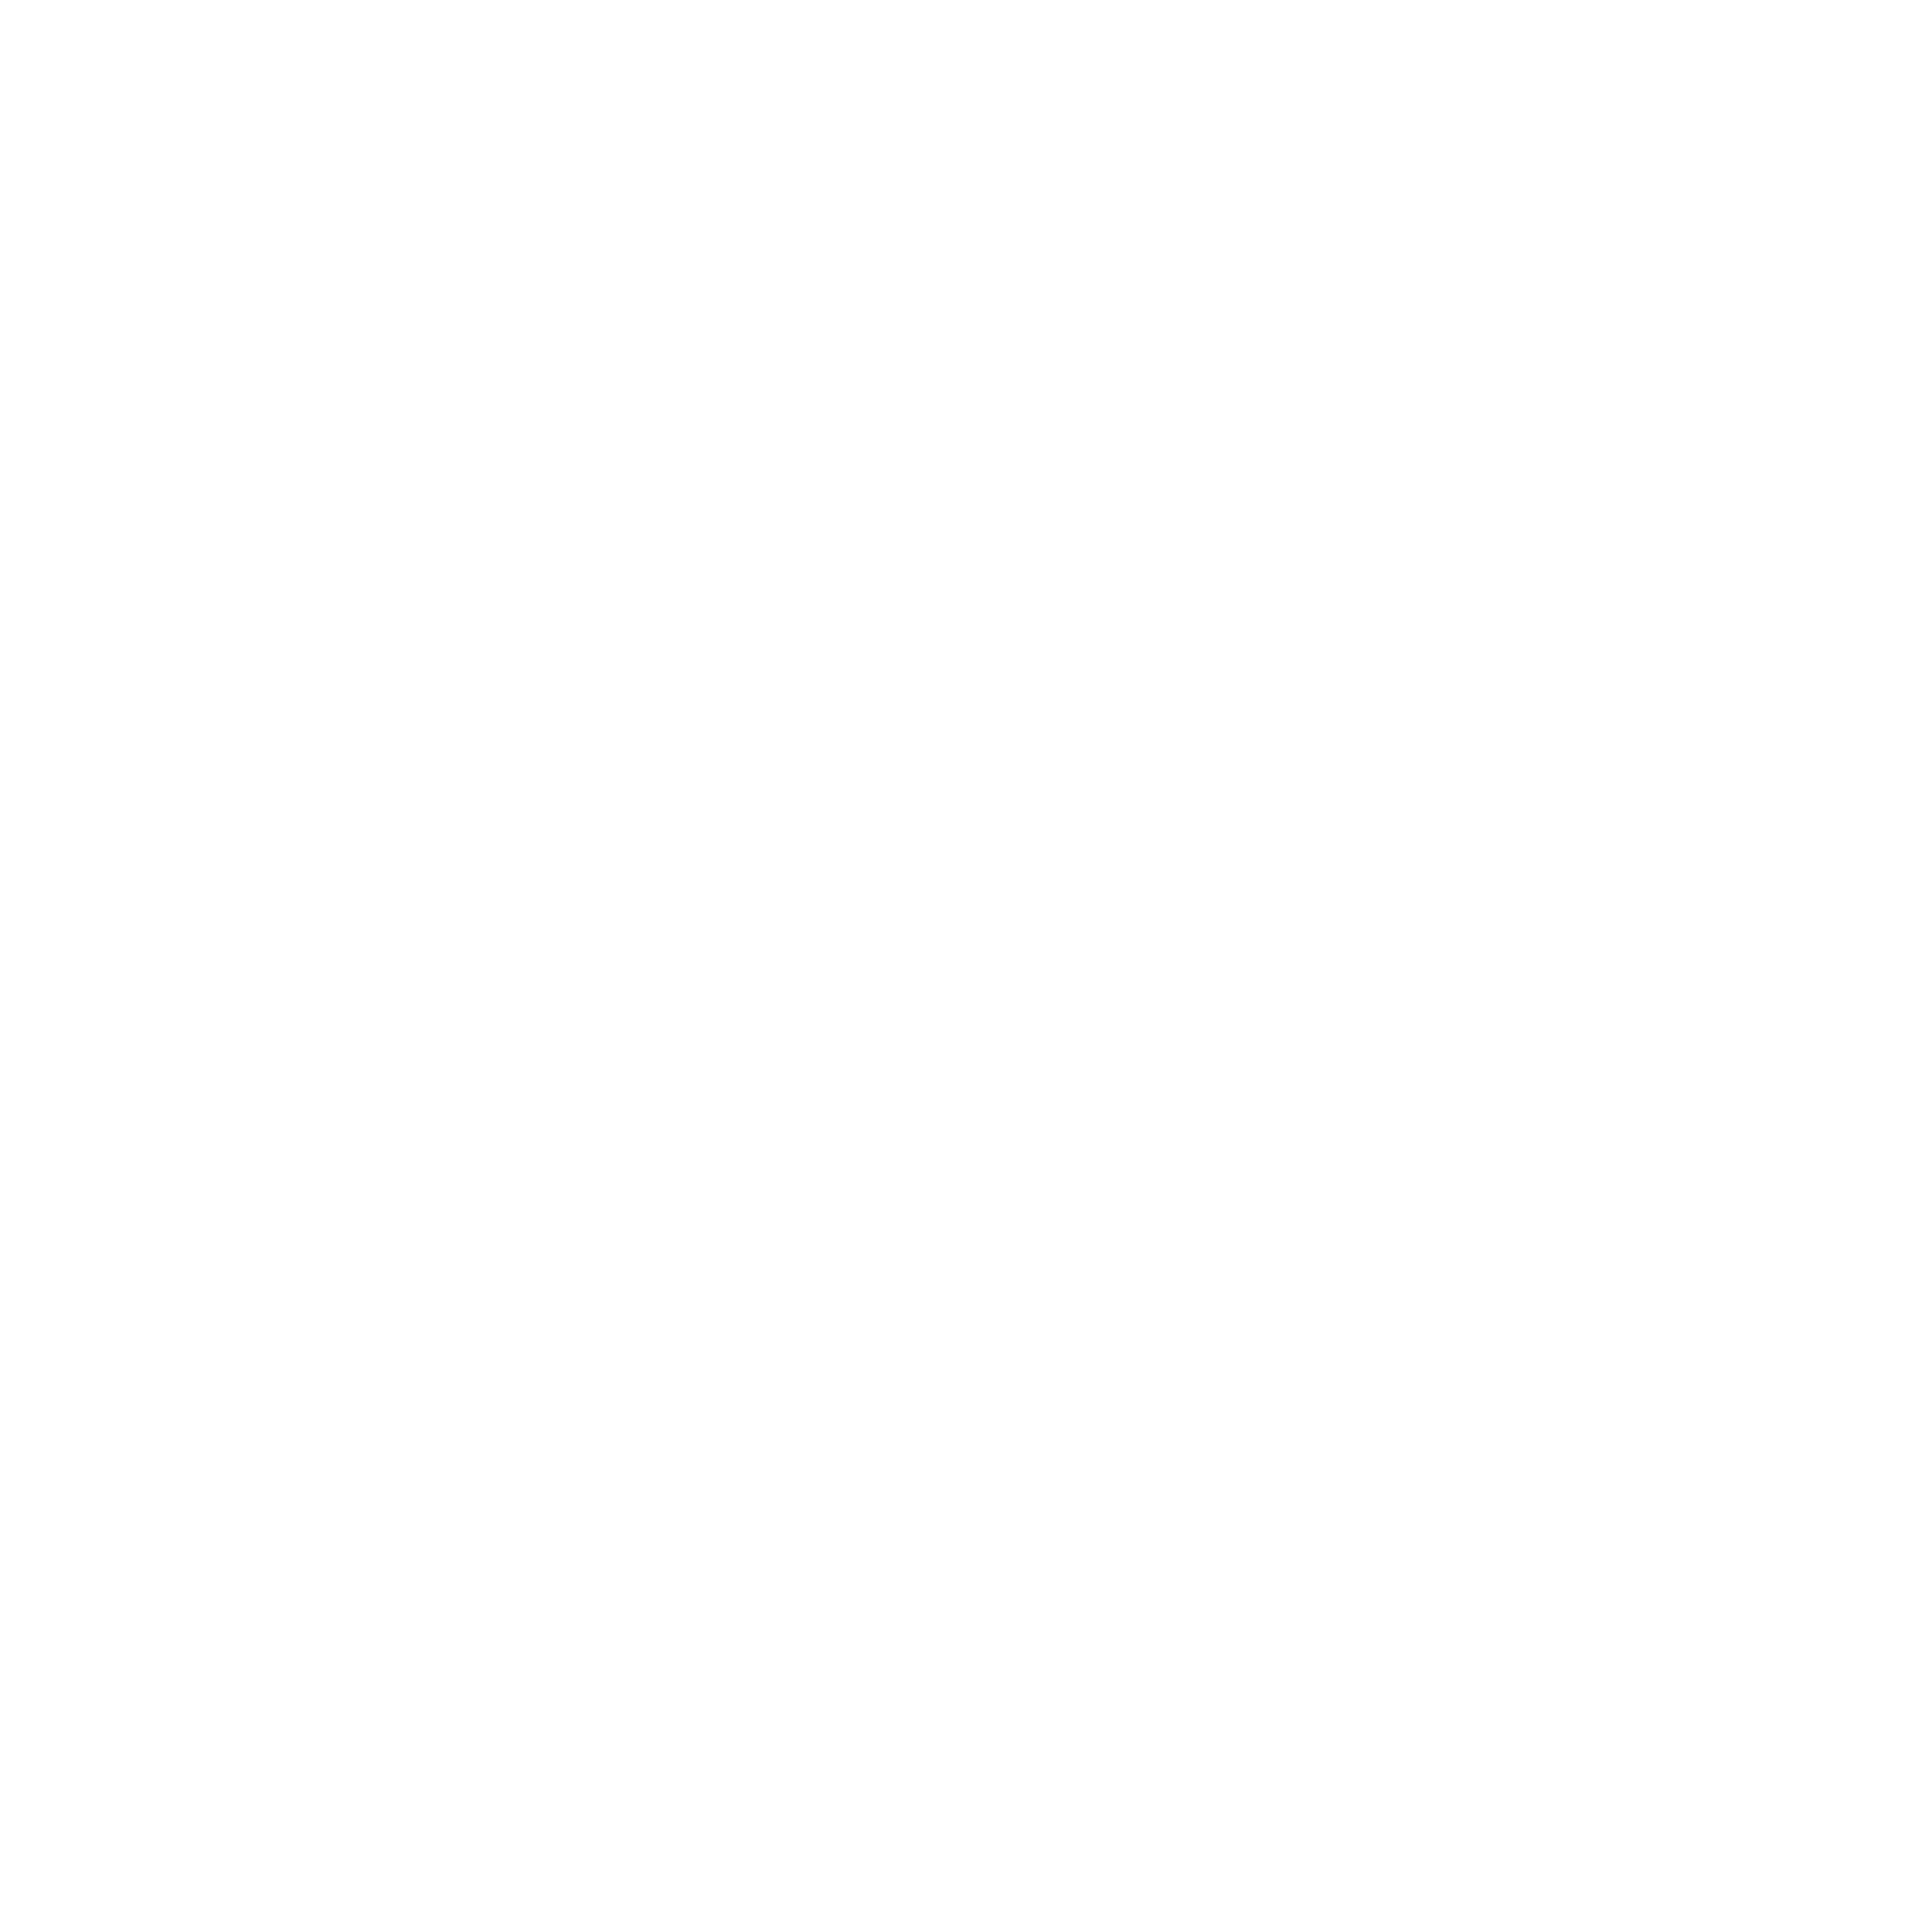 Udachi Shop